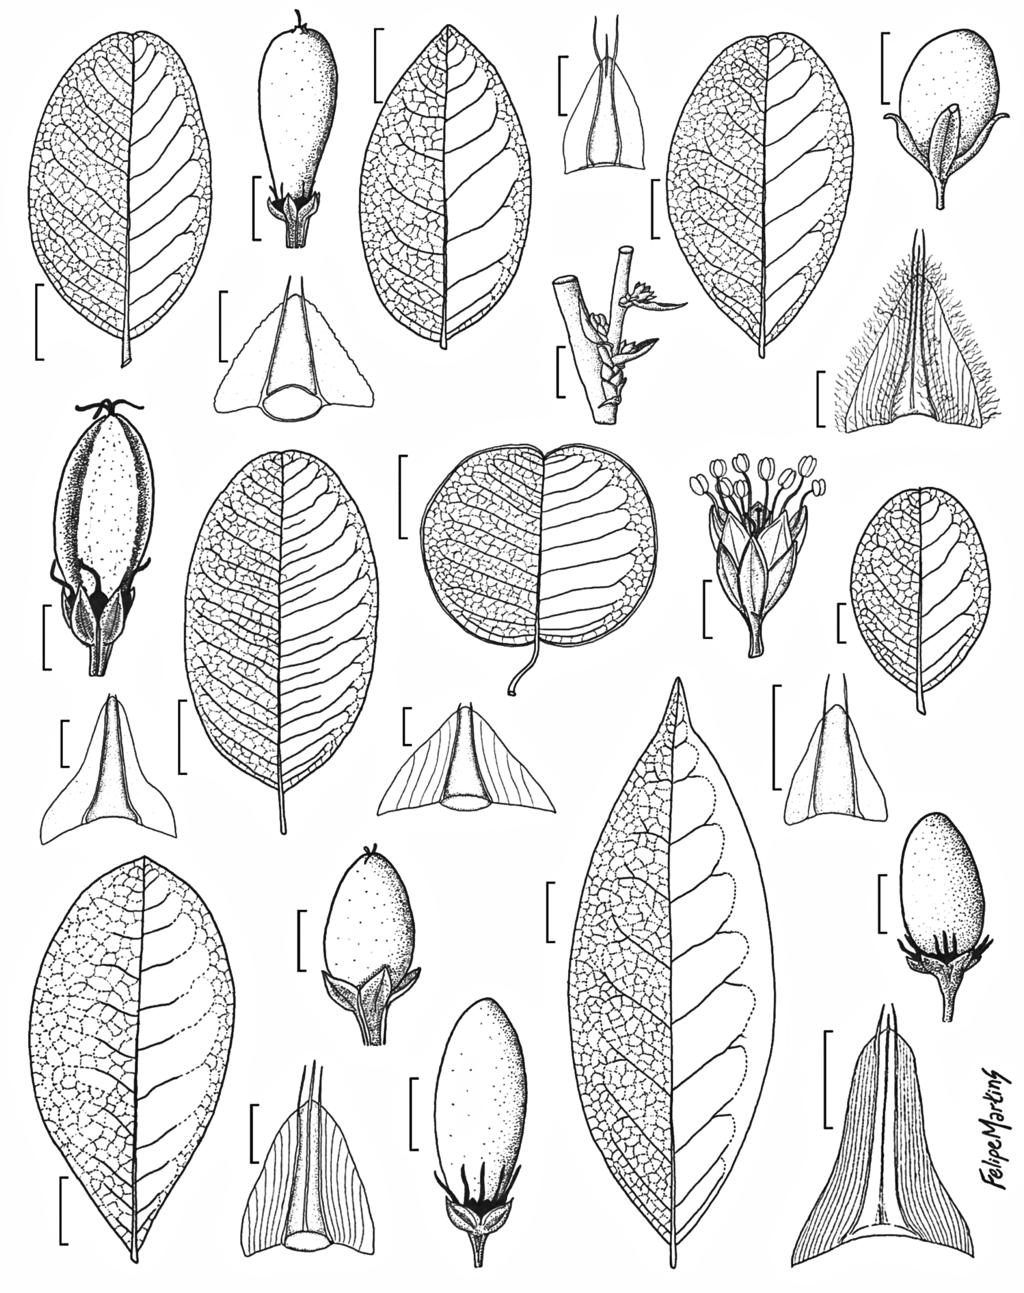 Erythroxylaceae do Ceará 887 3 mm c e i 3 mm a r q 5 mm p b o 4 mm d m n 3 mm f l g 5 mm 3 mm k j x h s t u v w Figura 4 a-c. Erythroxylum amplifolium a. folha; b. estípula; c. fruto. d-f. E. angelicae d.